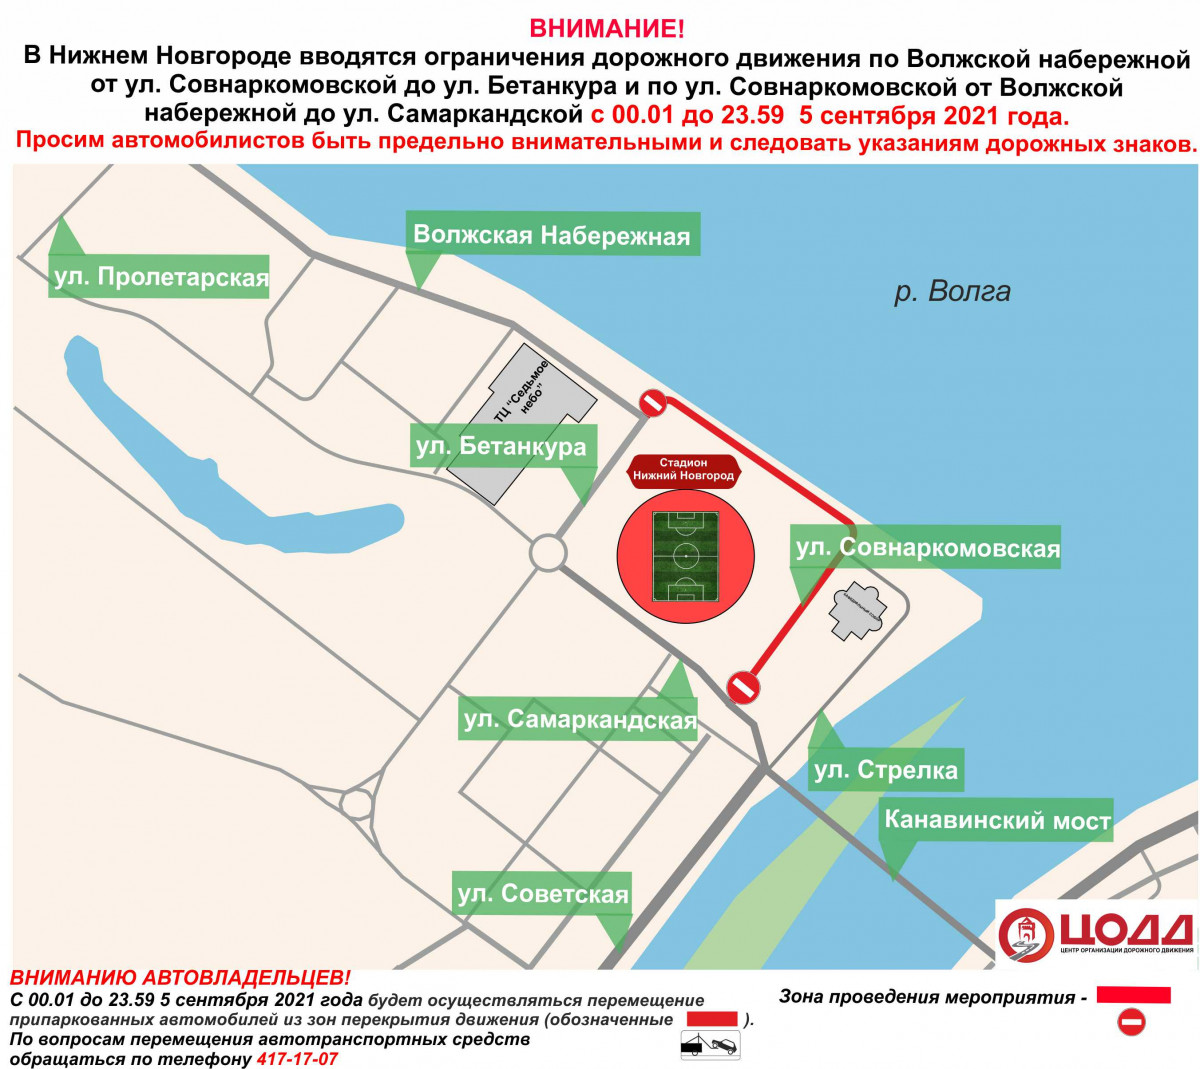 Движение транспорта приостановят на участках дороги на Волжской набережной и Совнаркомовской